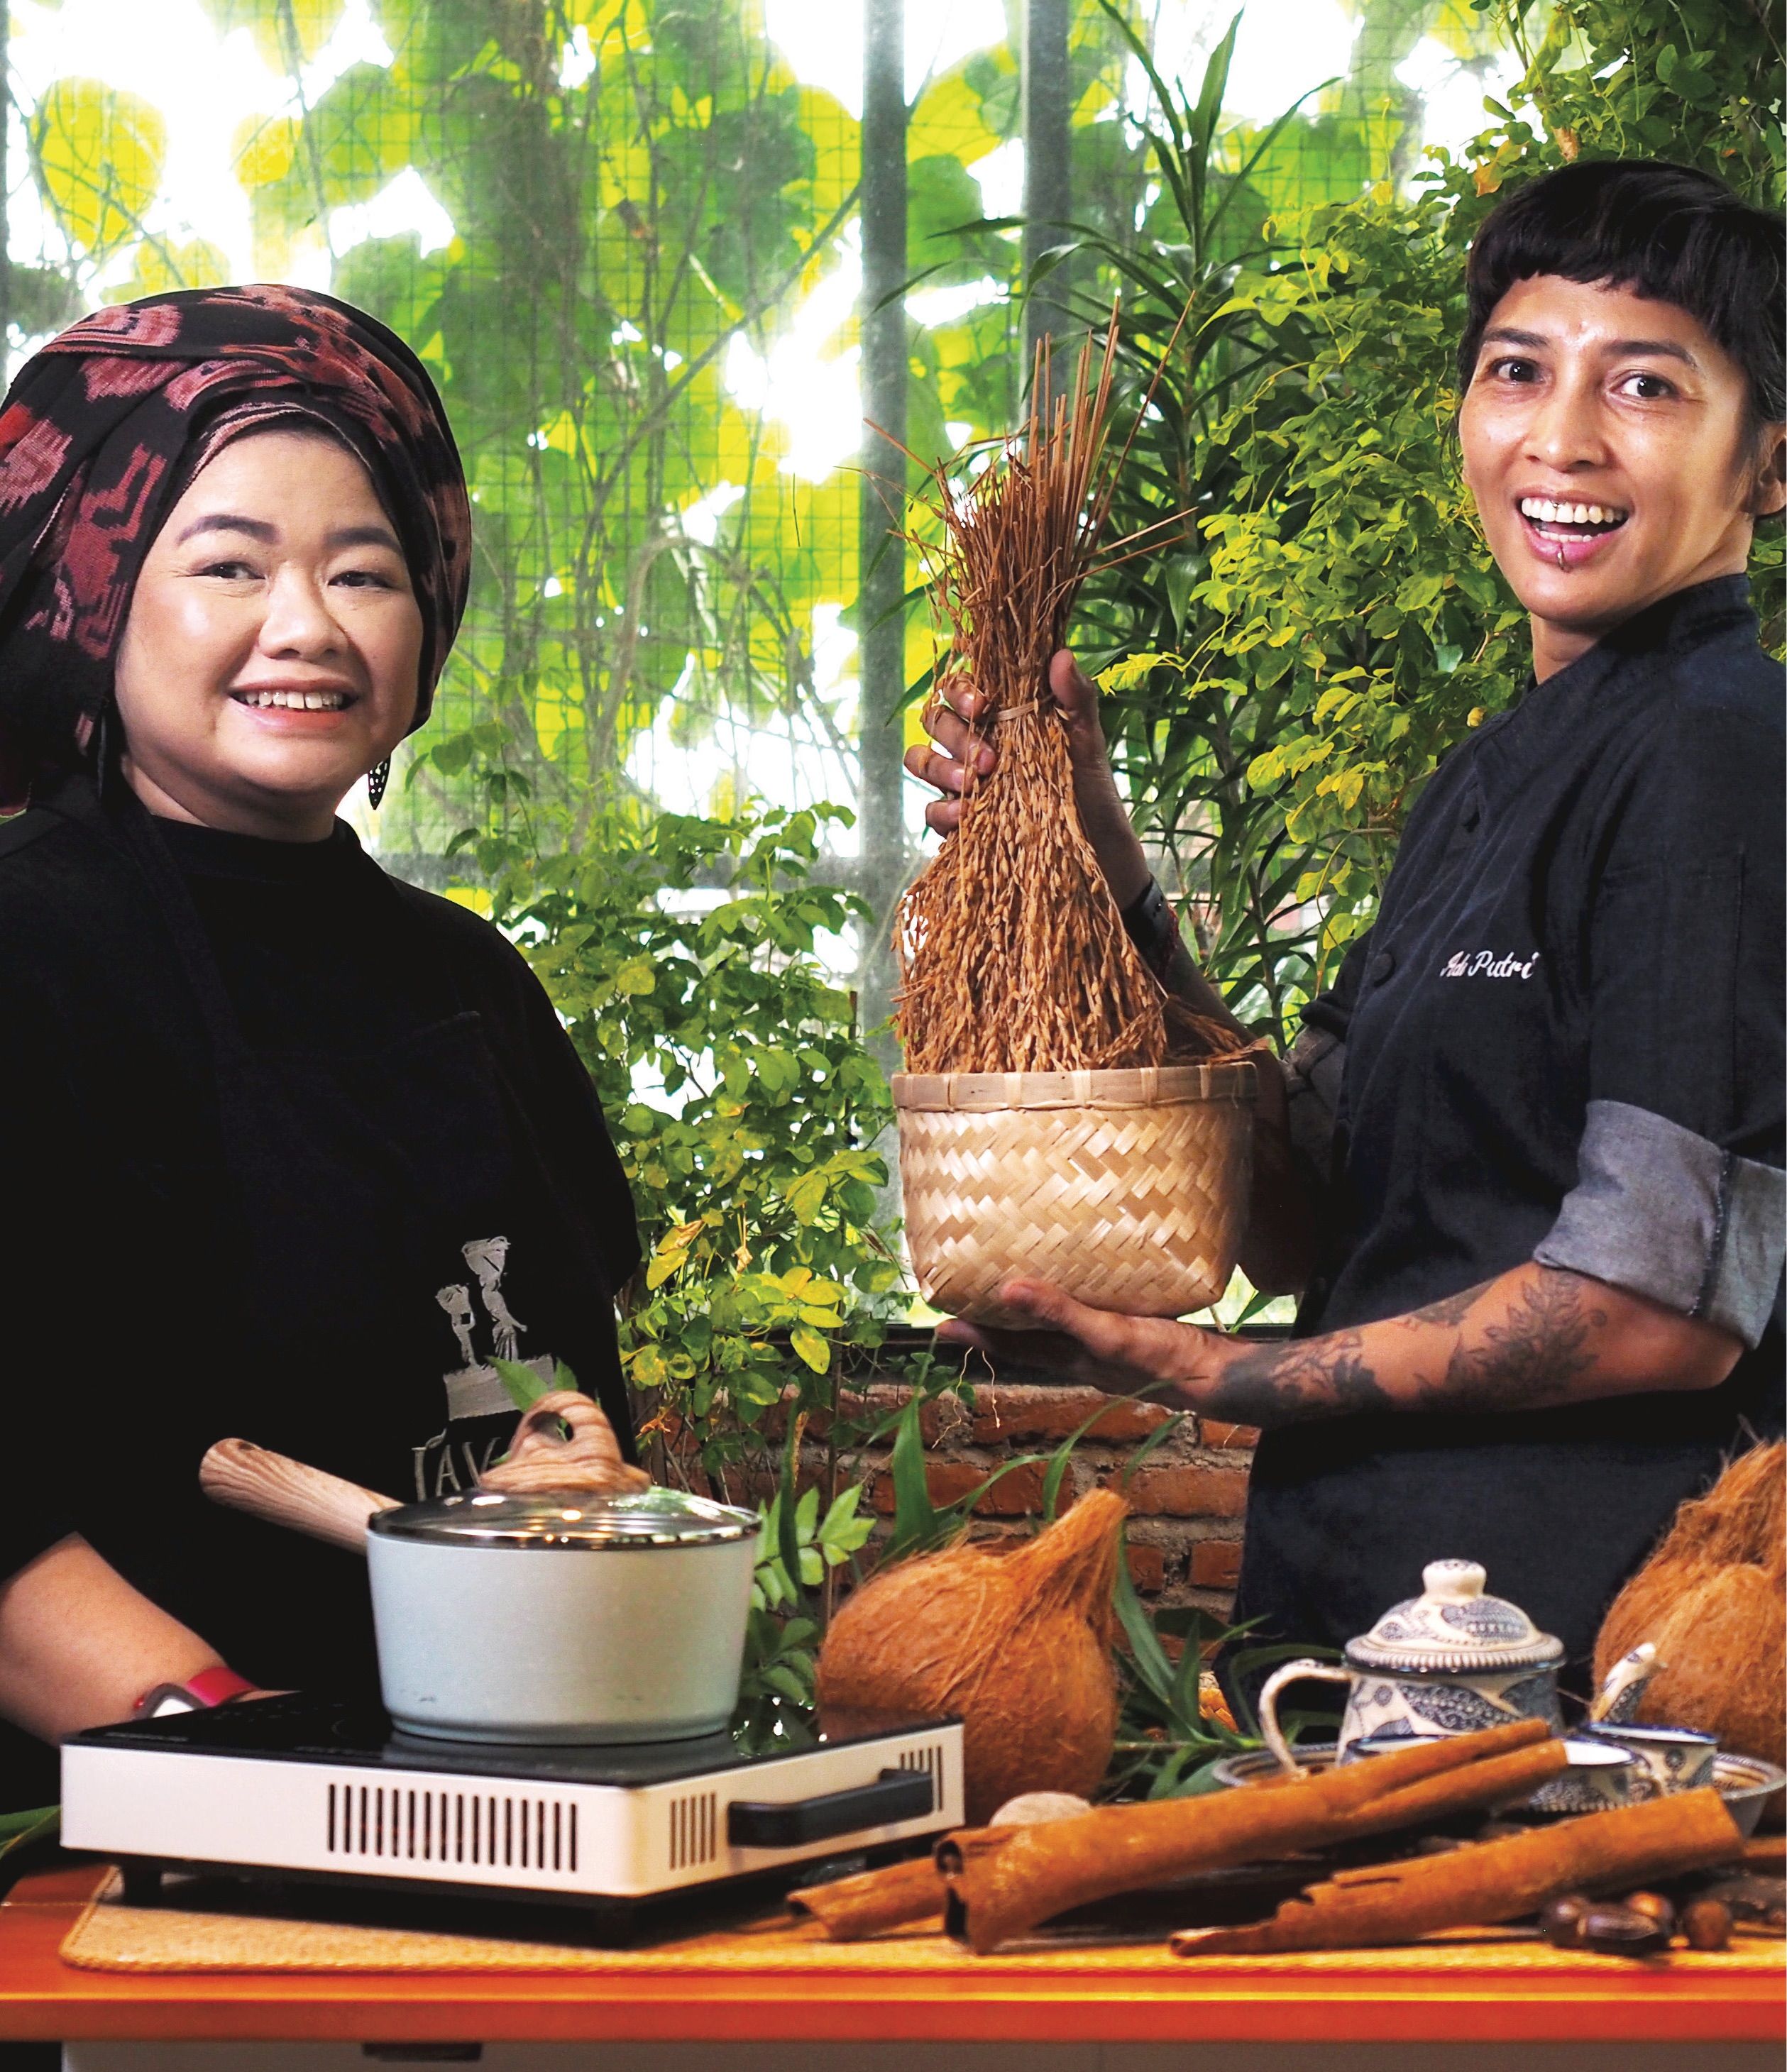 امرأتان ترتديان سترات الشيف تعدان الطعام بمكونات إندونيسية في مطبخ خارجي.